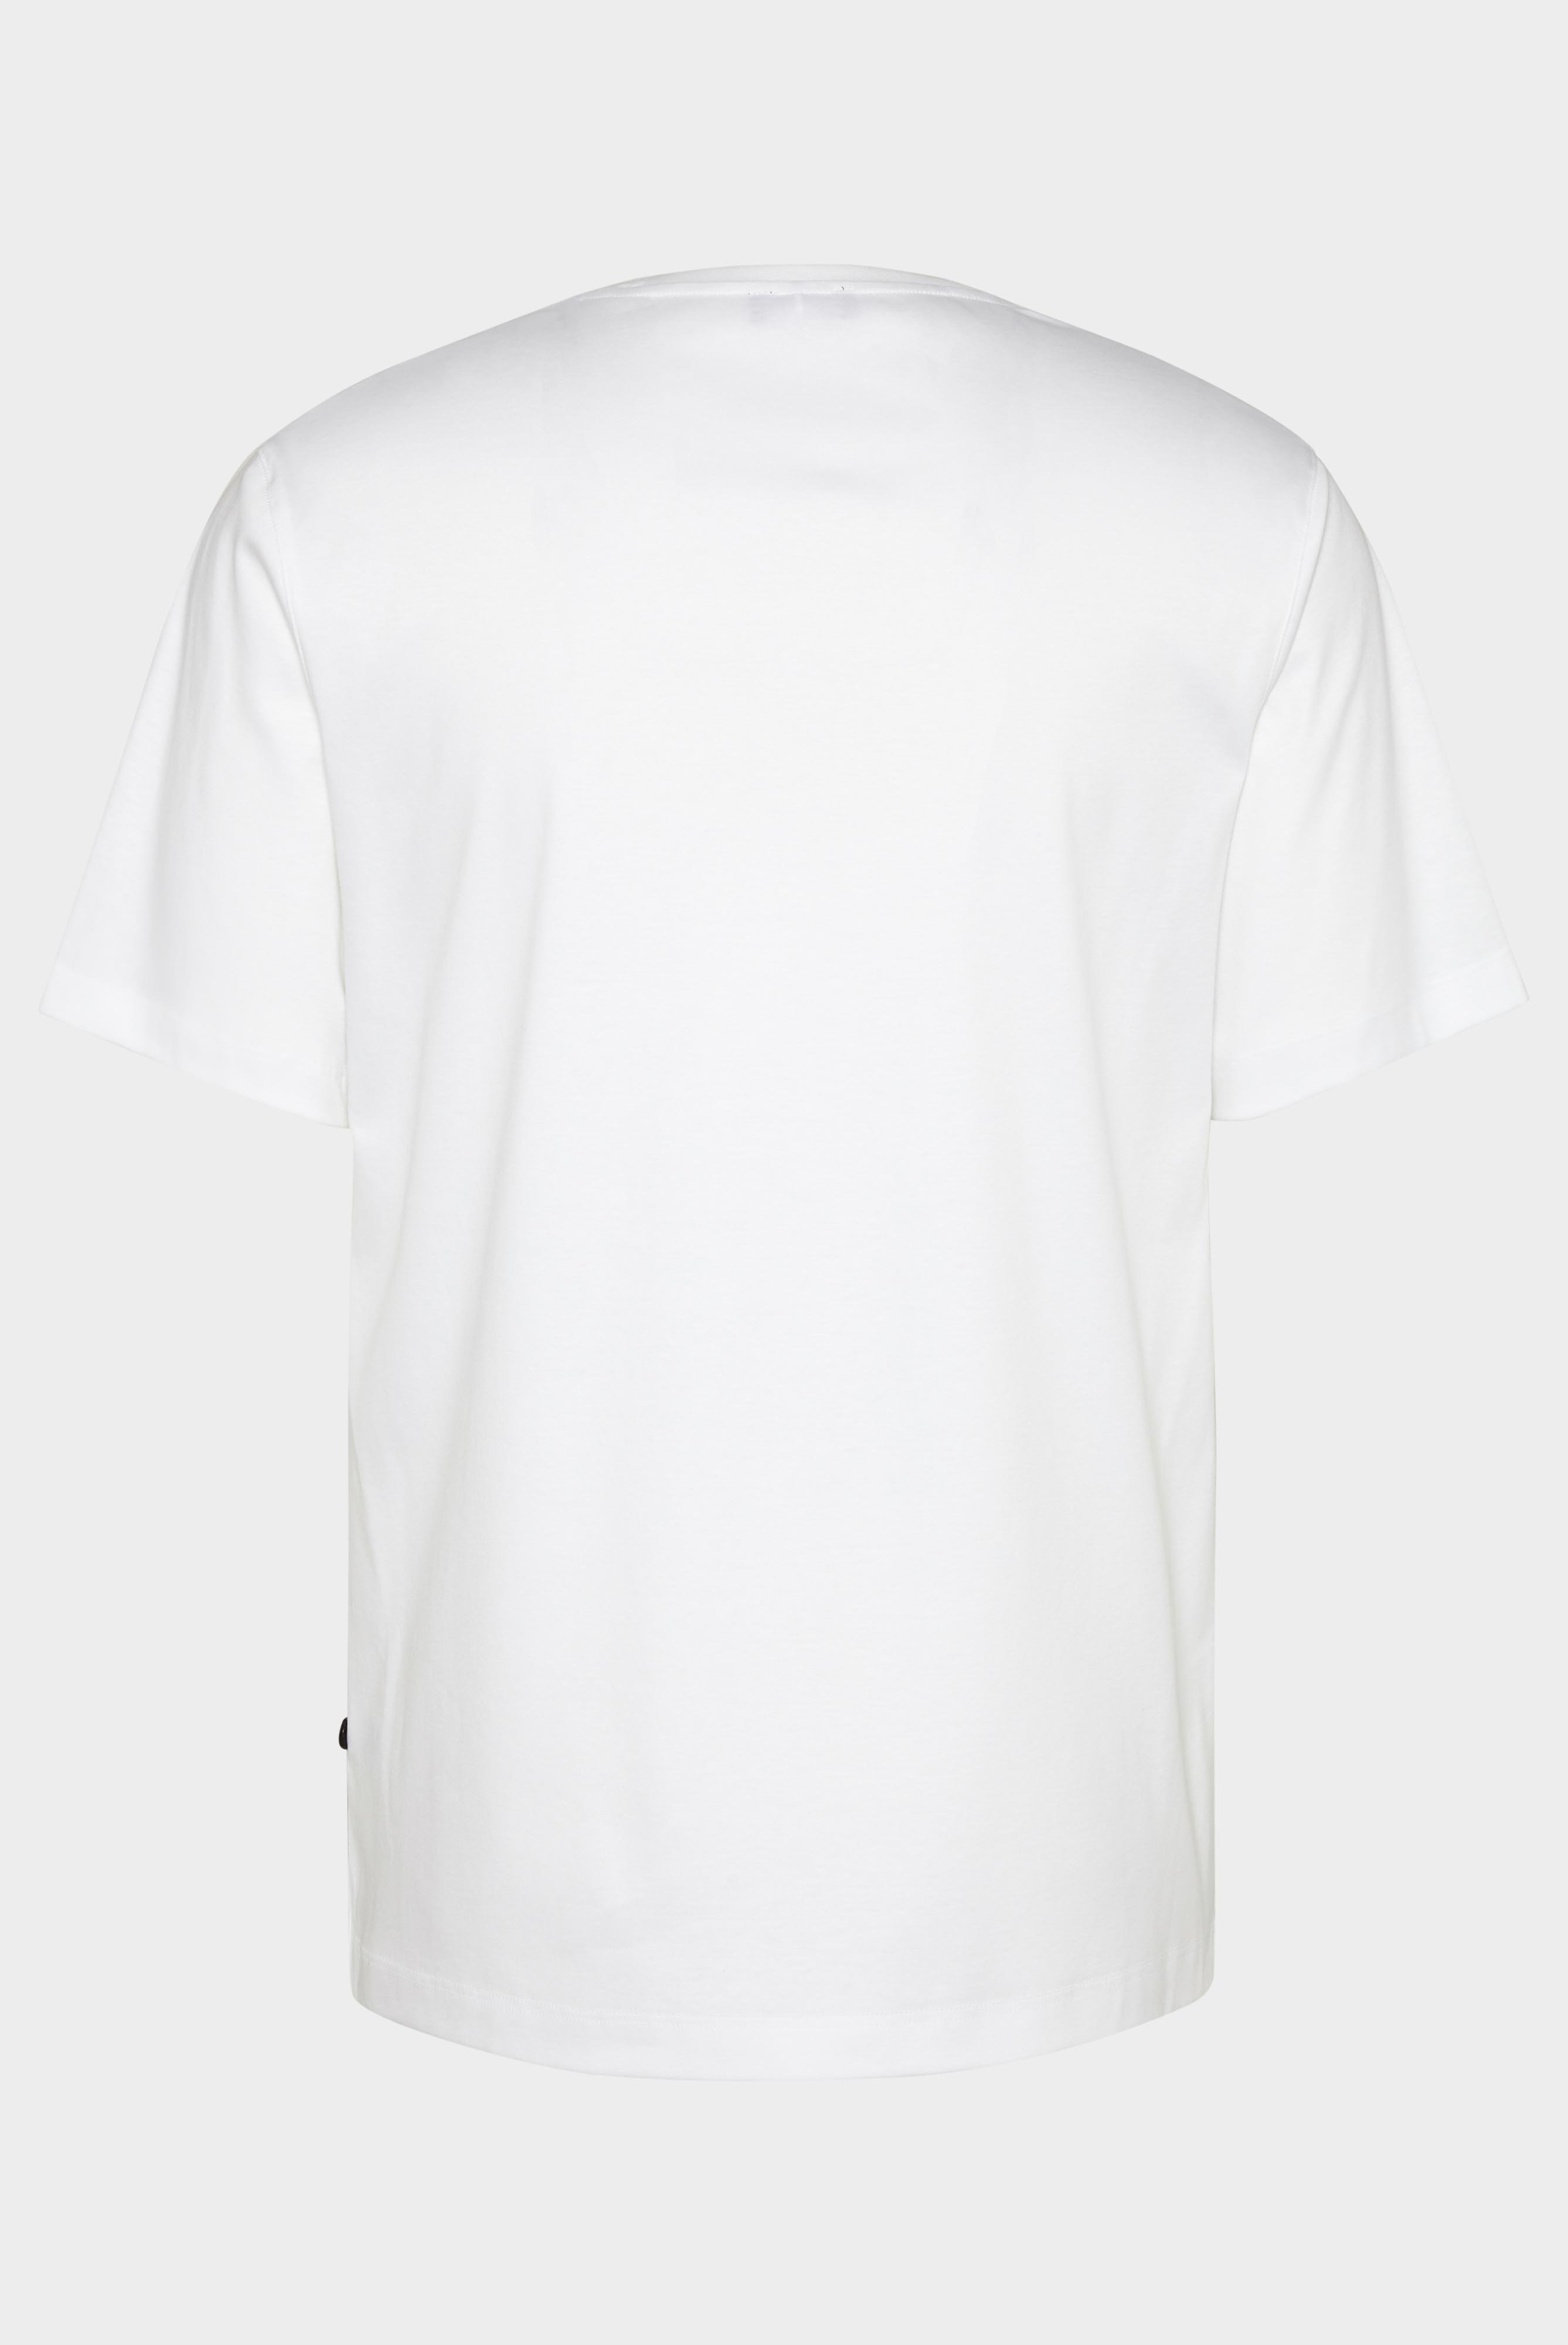 T-Shirts+Oversize Jersey T-Shirt mit Brusttasche+20.1776.GZ.180031.000.L